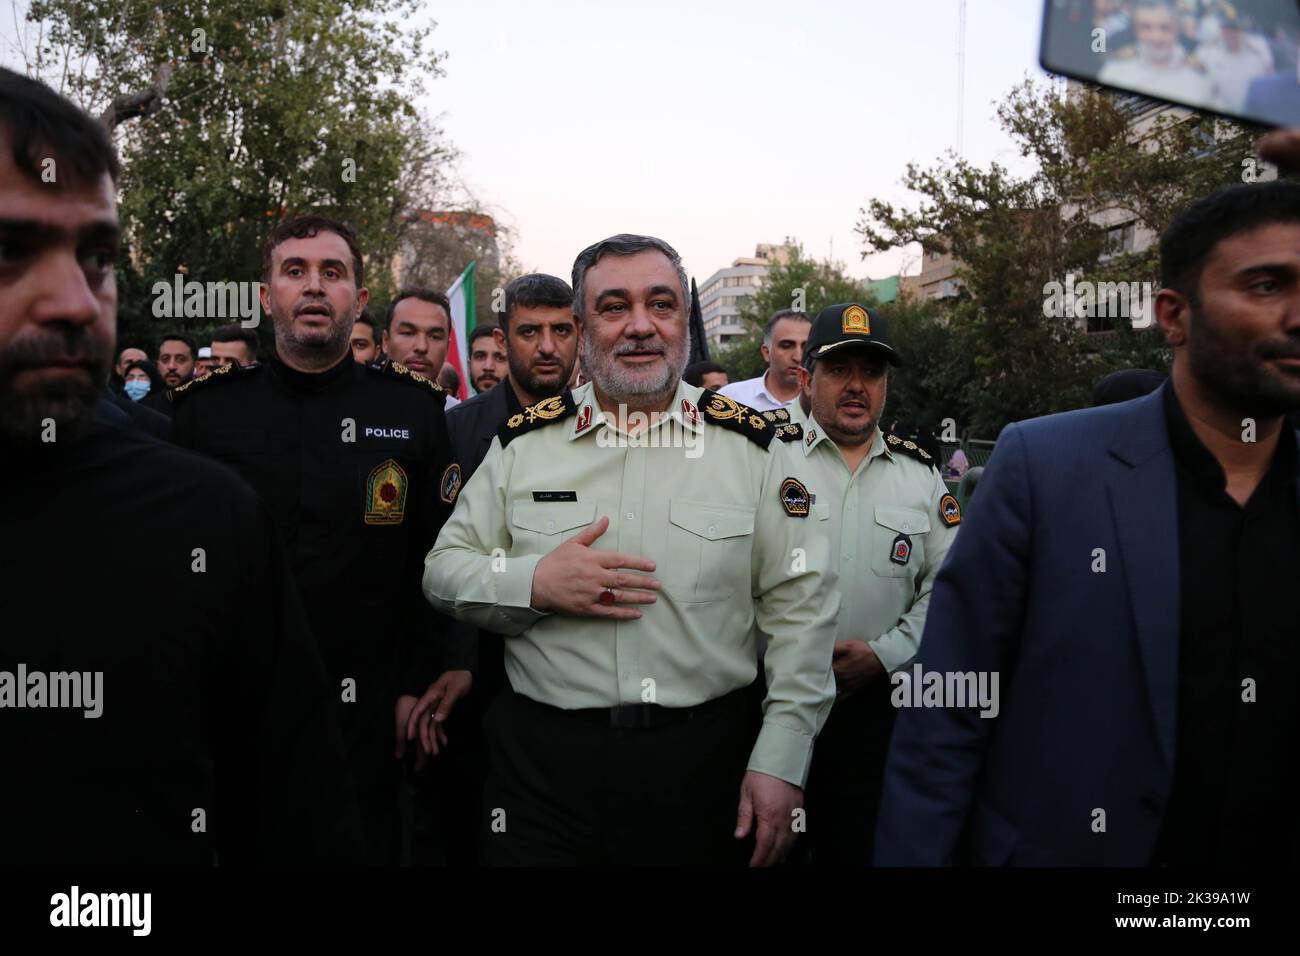 Teheran, Teheran, Iran. 25. September 2022. Der iranische Oberbefehlshaber der Strafverfolgungsbehörde (Polizeichef) Brigadegeneral HOSSEIN ASHTARI nimmt an einer Kundgebung Teil, um die jüngsten regierungsfeindlichen Unruhen wegen des Todes einer jungen Frau in Polizeigewahrsam in Teheran, Iran, am 25. September 2022 zu verurteilen. Die Krise, die sich im Iran ausbreitet, begann als öffentliche Ausschüttung über den Tod von Mahsa Amini, einer jungen 22-jährigen Frau aus Saqqez, einer nordwestlichen kurdischen Stadt, die letzte Woche von der Moralpolizei des Landes in Teheran verhaftet wurde, weil sie angeblich gegen die strikt erzwungene Kleiderordnung verstoßen hatte. Quelle: ZUMA Press, Inc./Alamy Li Stockfoto